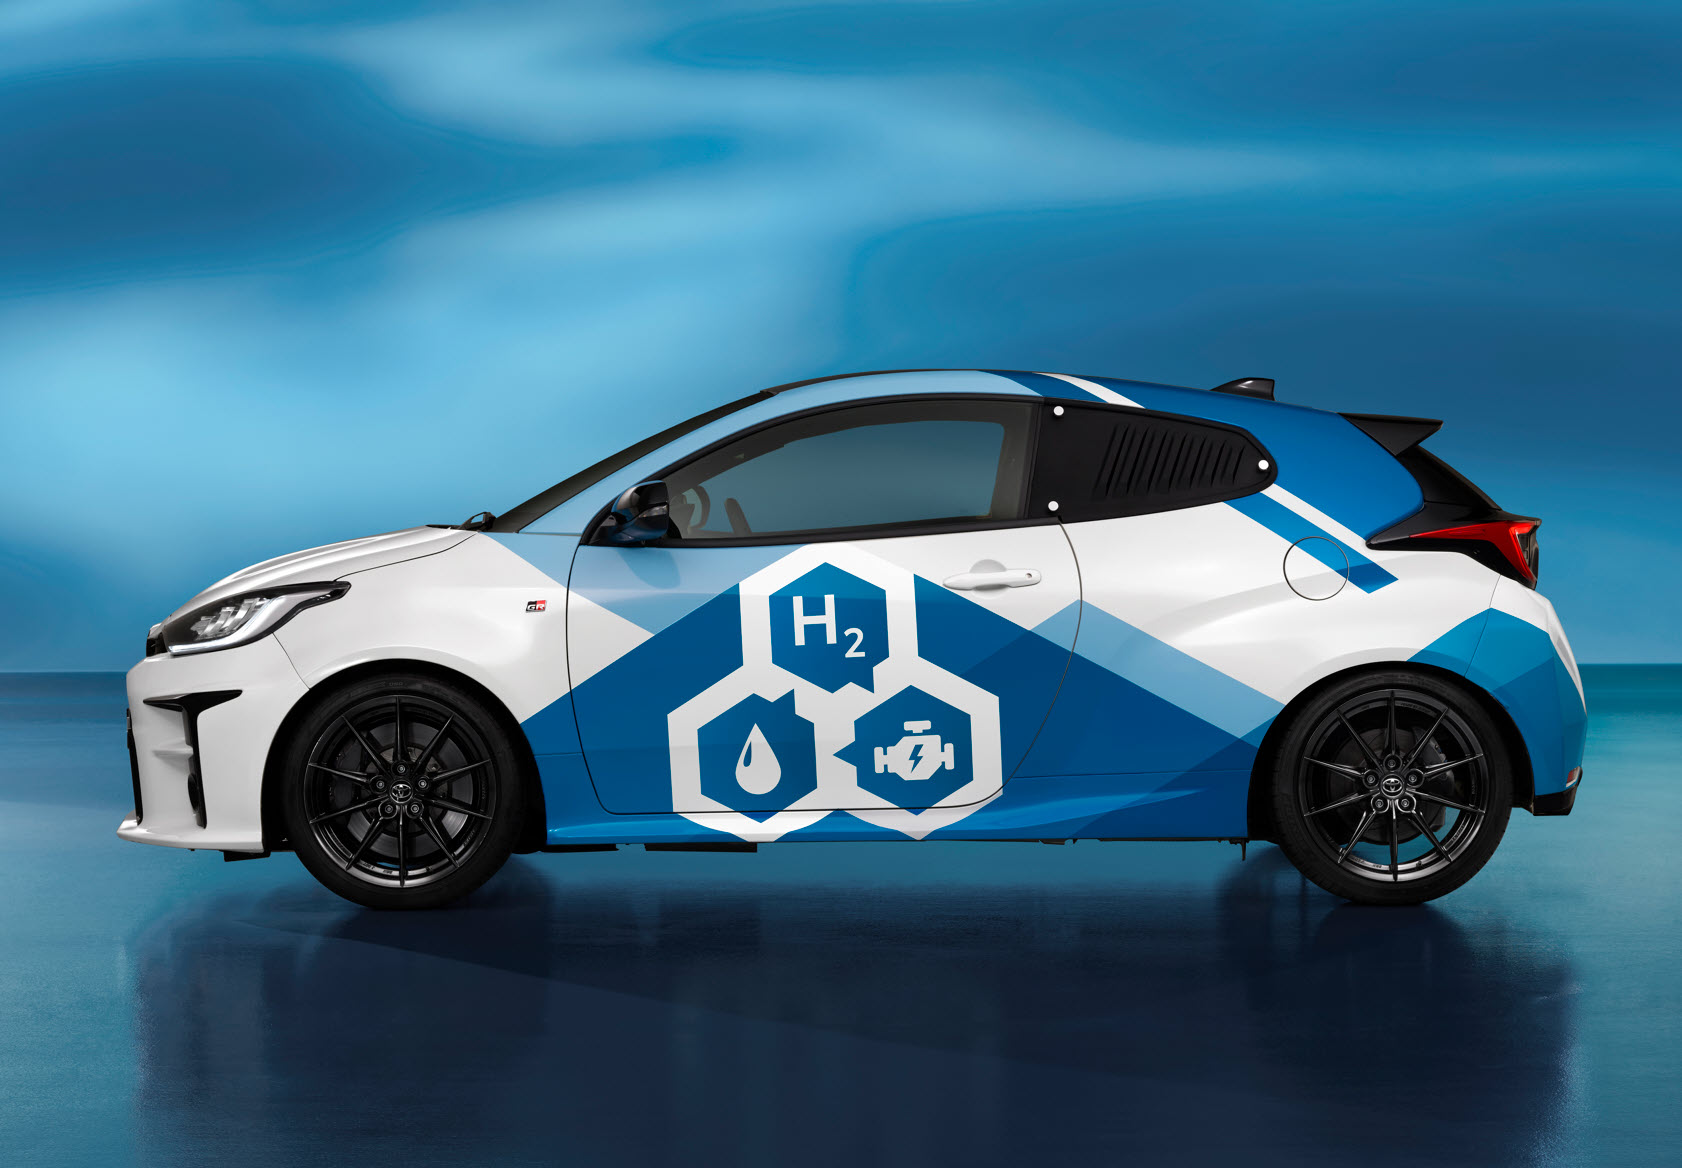 Toyota GR Yaris H2 hydrogen car